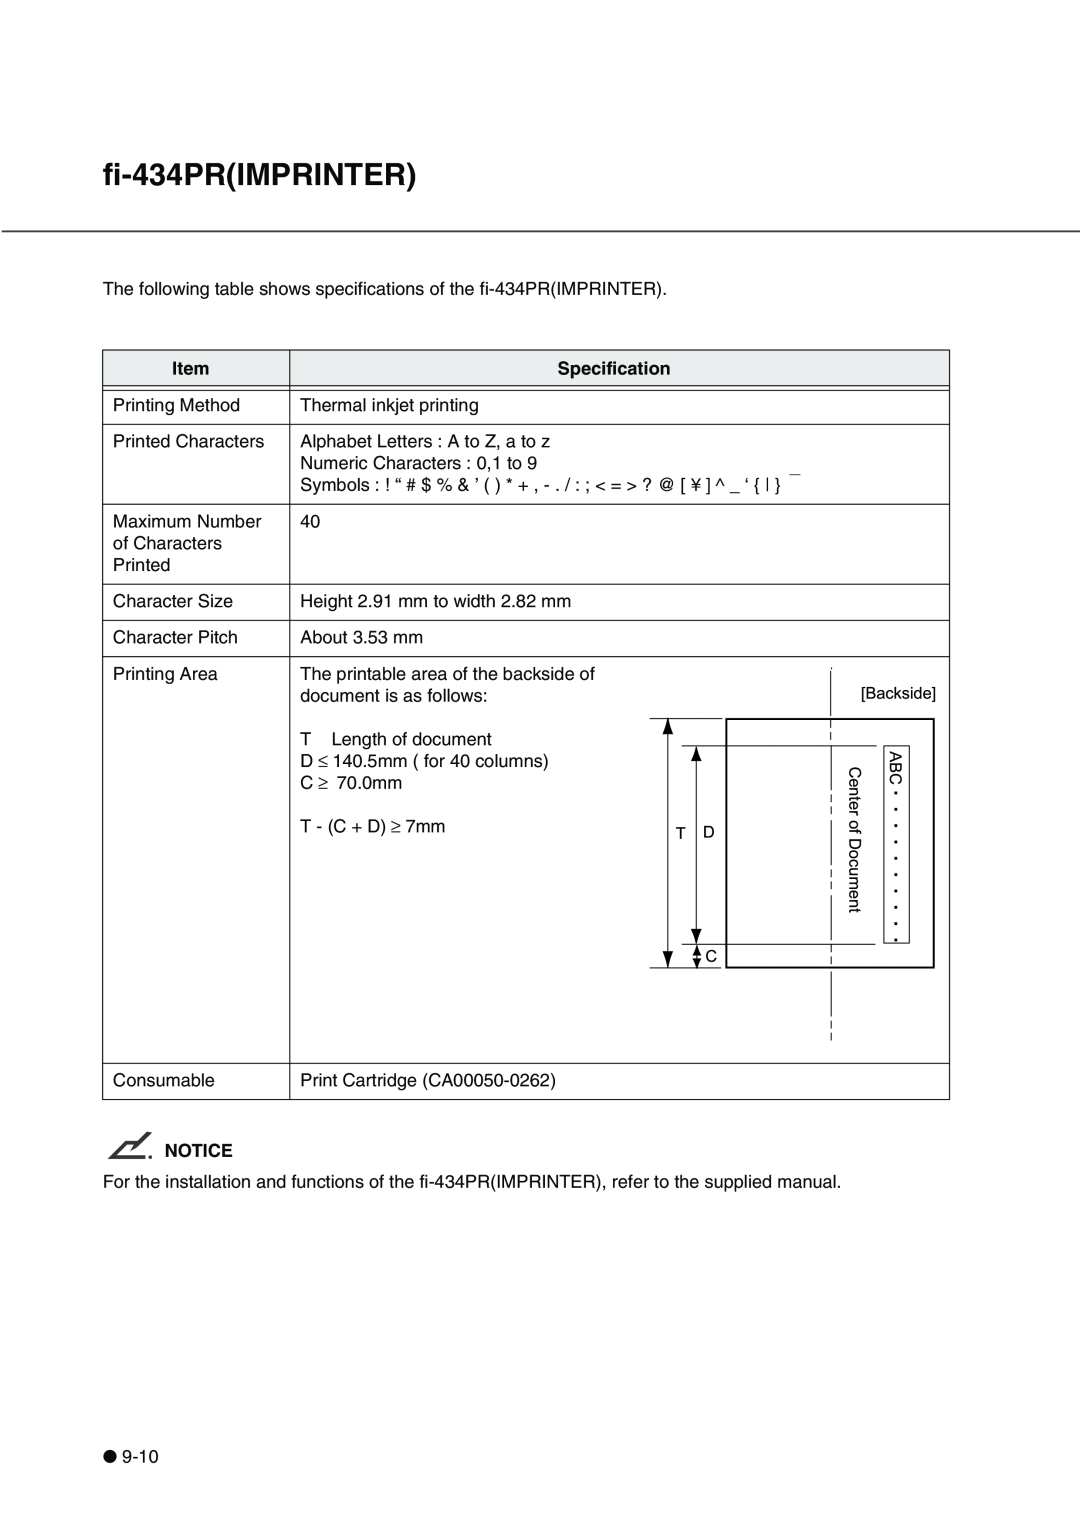 Fujitsu fi-4340C manual Backside, fi-434PRIMPRINTER, CenterofDocument, Specification 